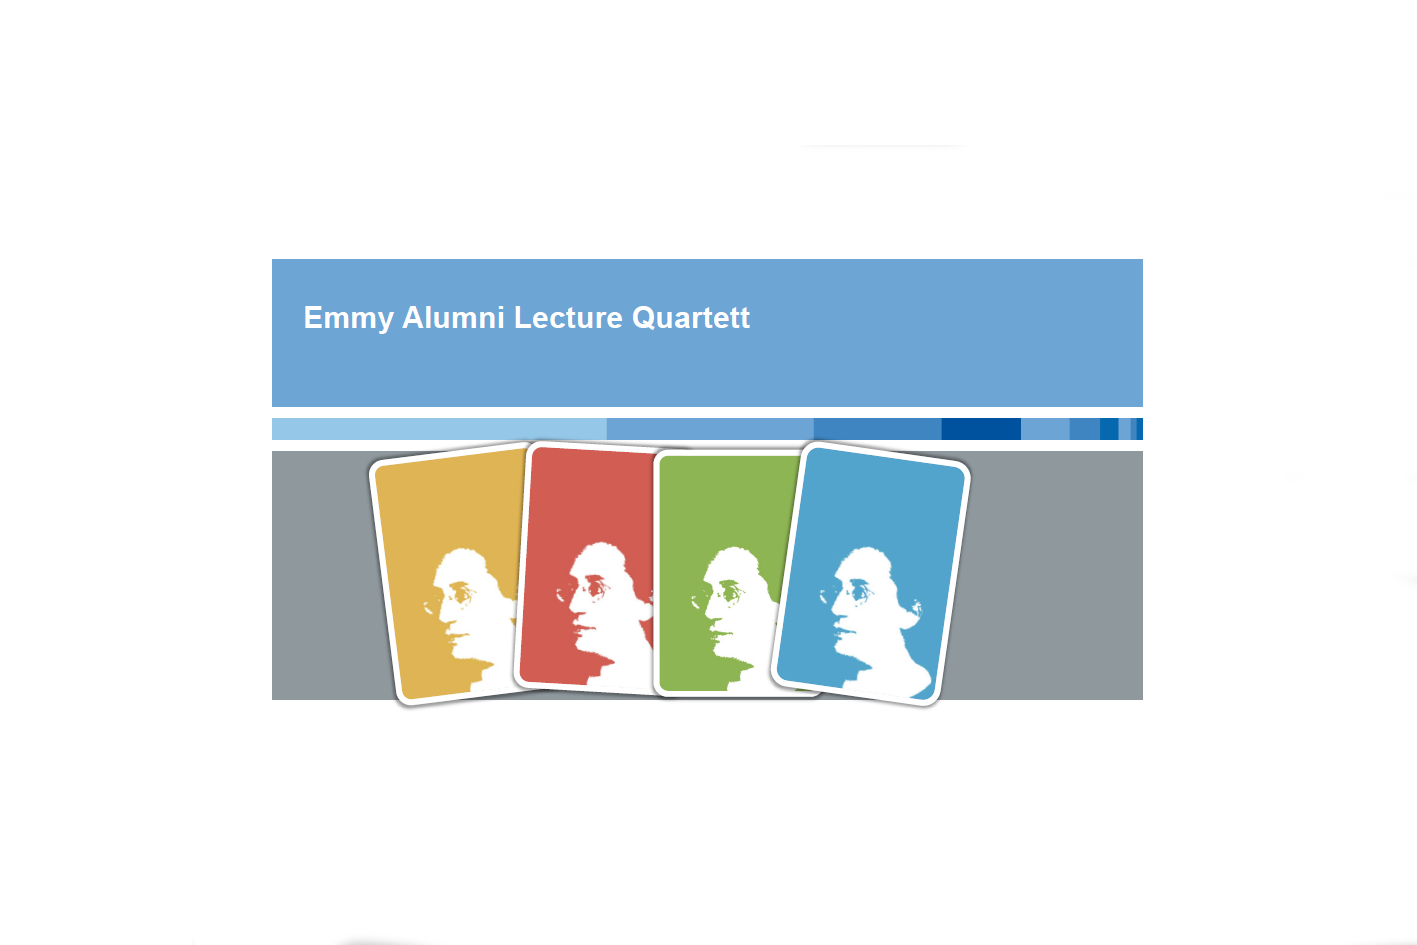 Präsentationsstartseite der Emmy Noether-Alumni-Lecture